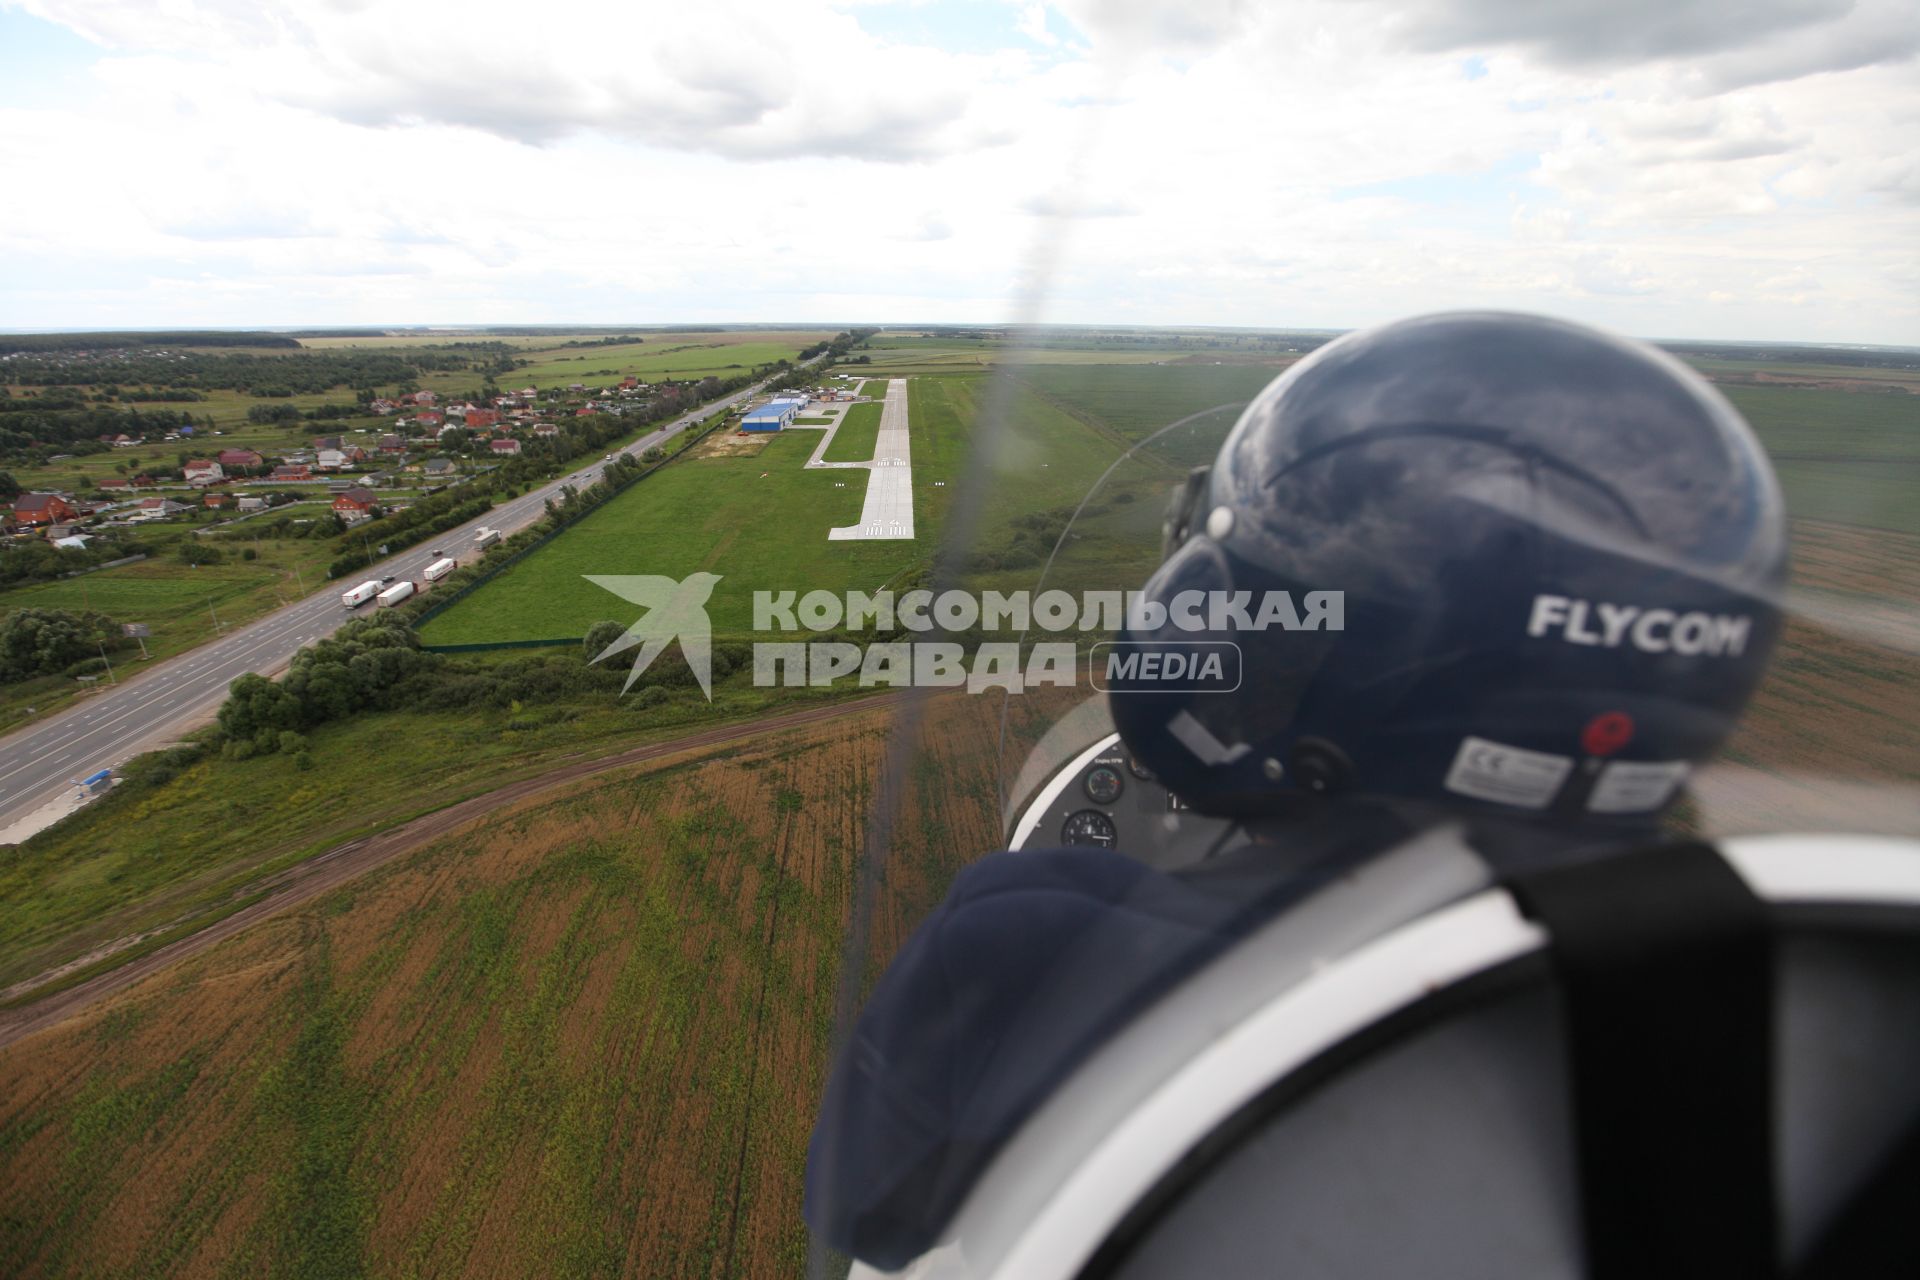 Московская область. Полеты на автожире (гироплане) на аэродроме возле Воскресенска